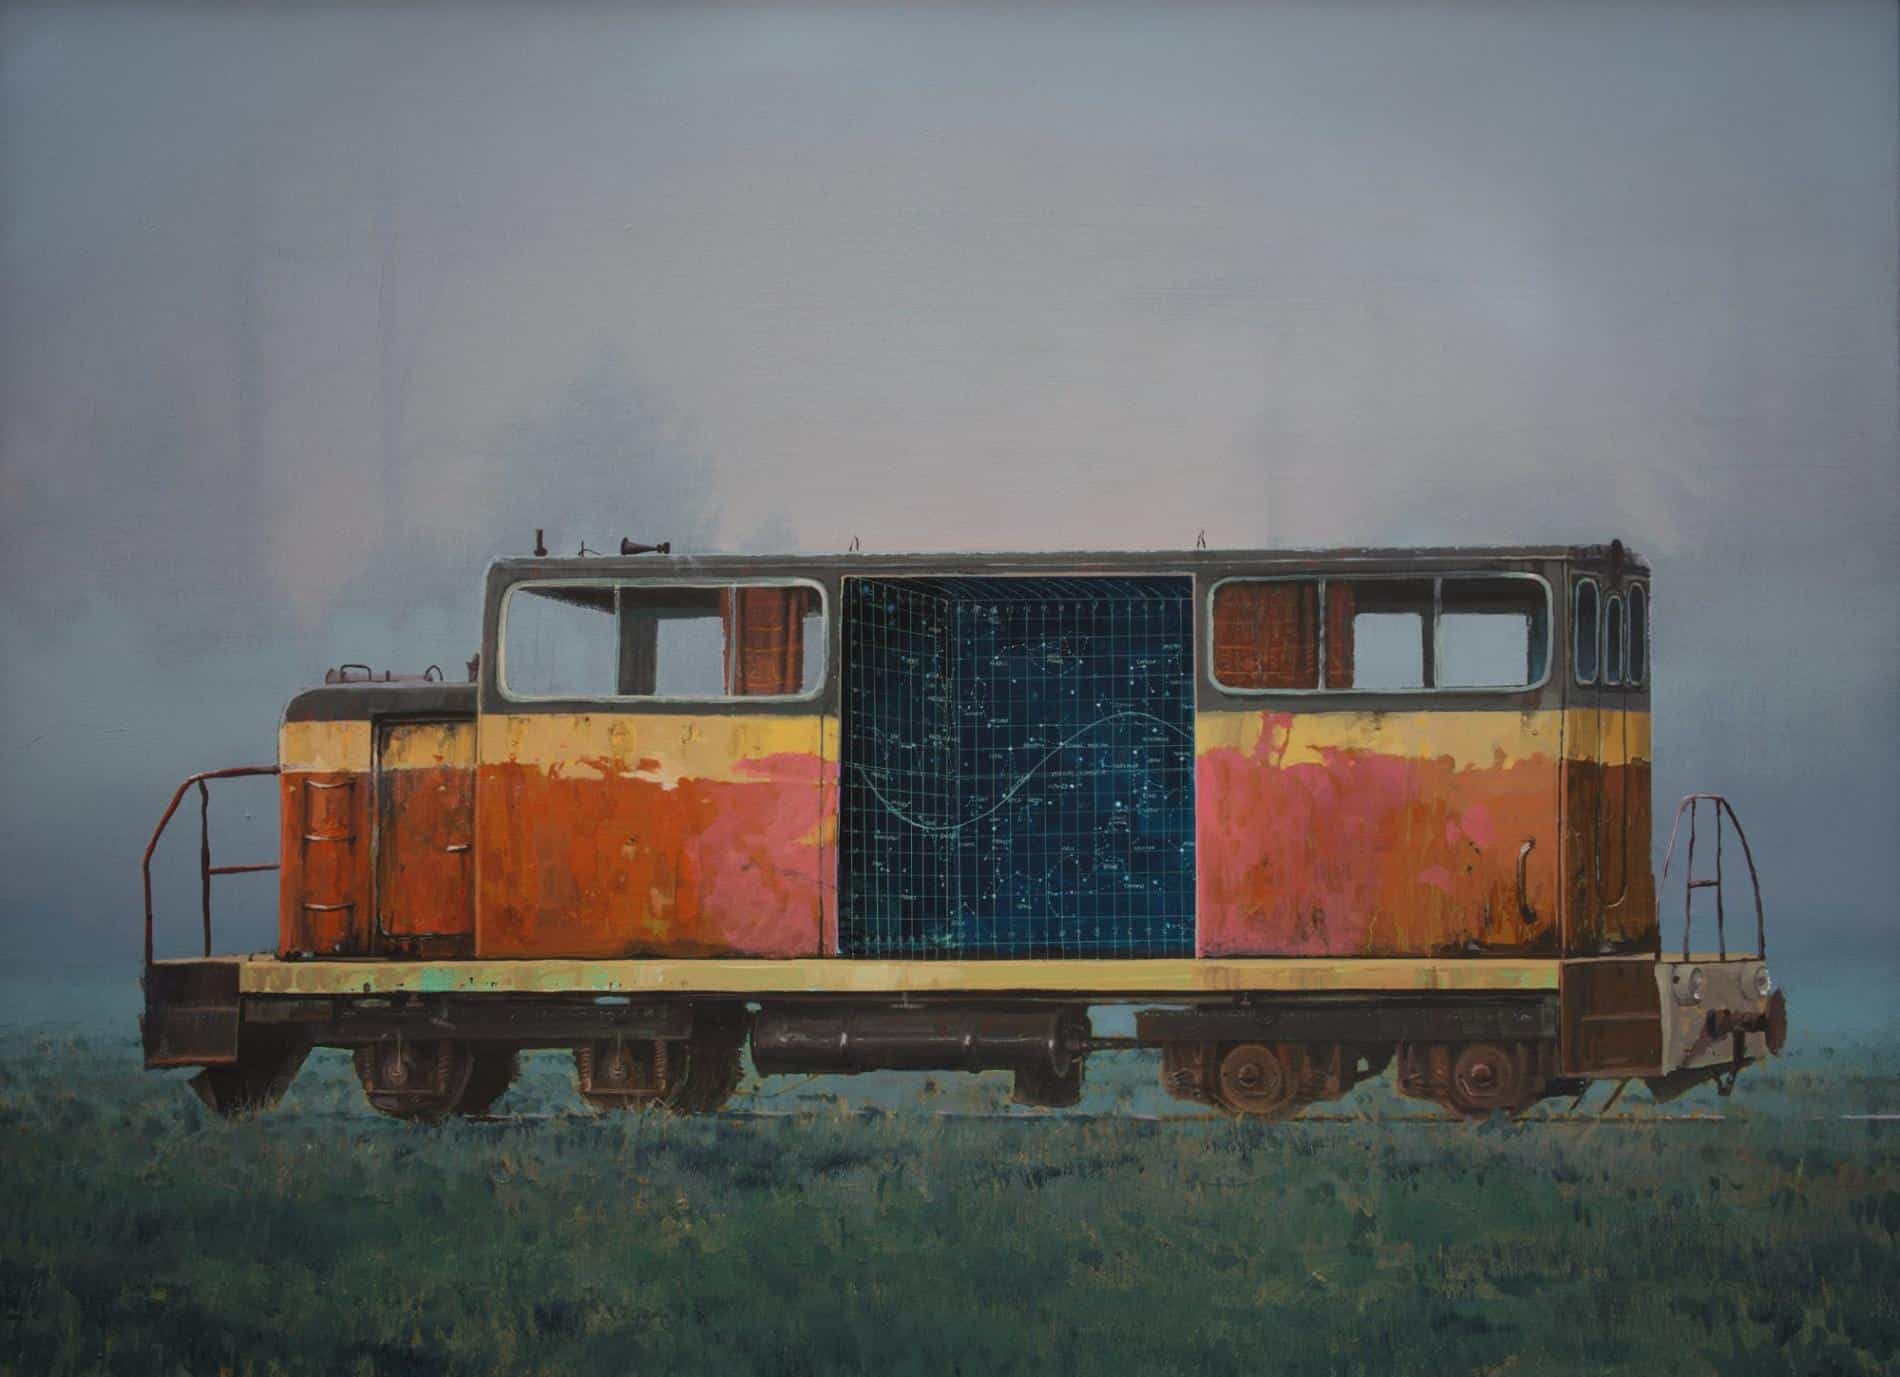 Pintura al oleo de un vagón de tren con detalles de una formula matematica hehco por Andrew McIntosh